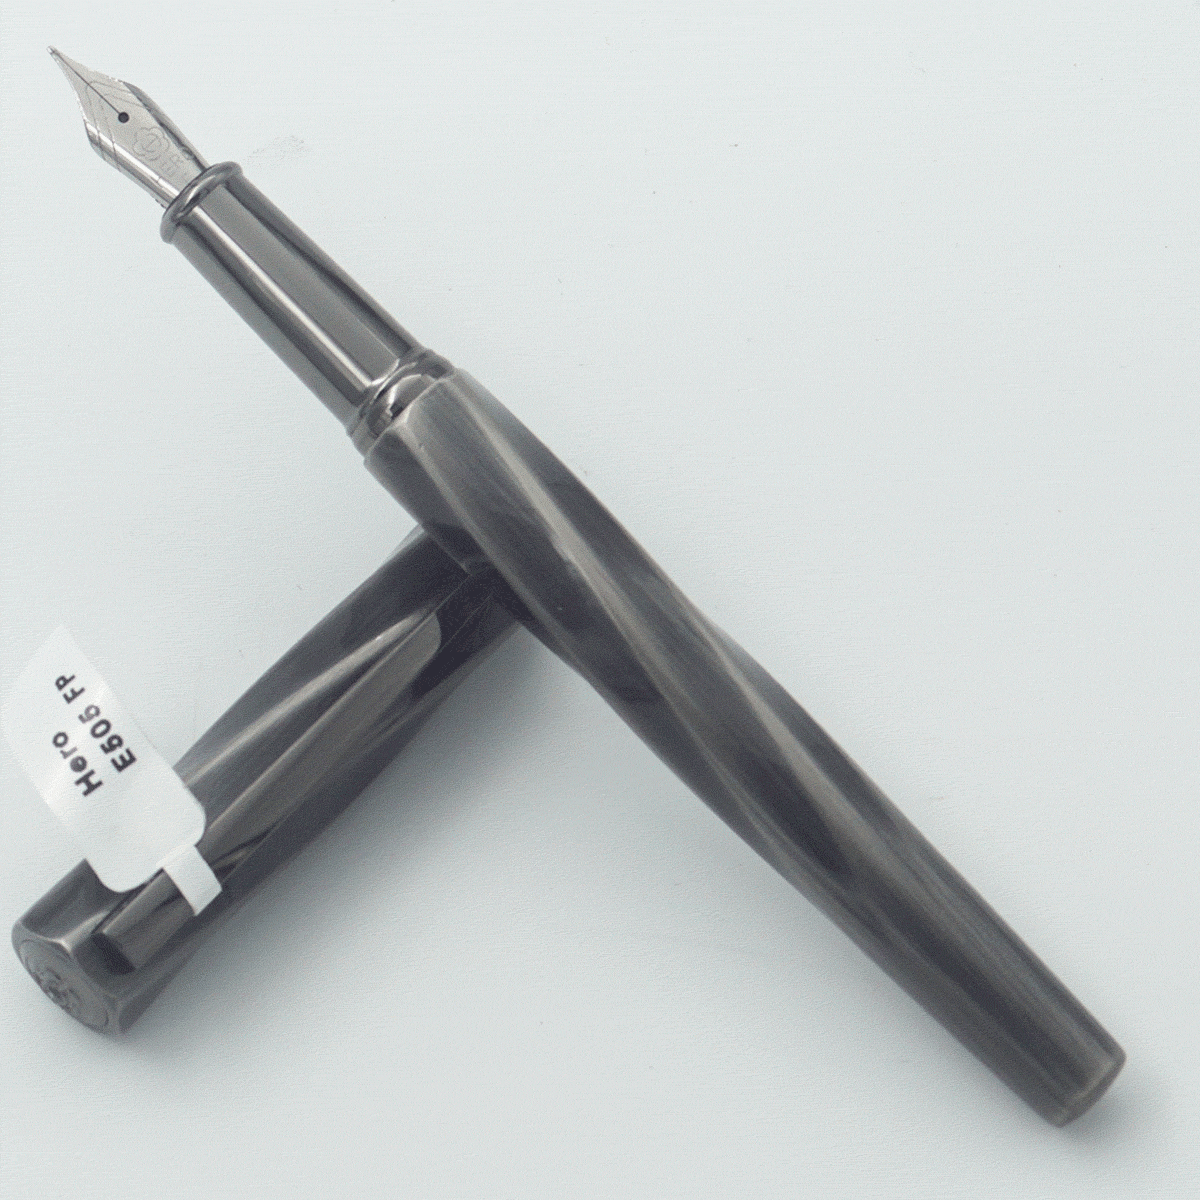 Hero E505 Grey Color Helical Design Body With Black Color Clip Fine Nib Converter Type Fountain Pen SKU 24373